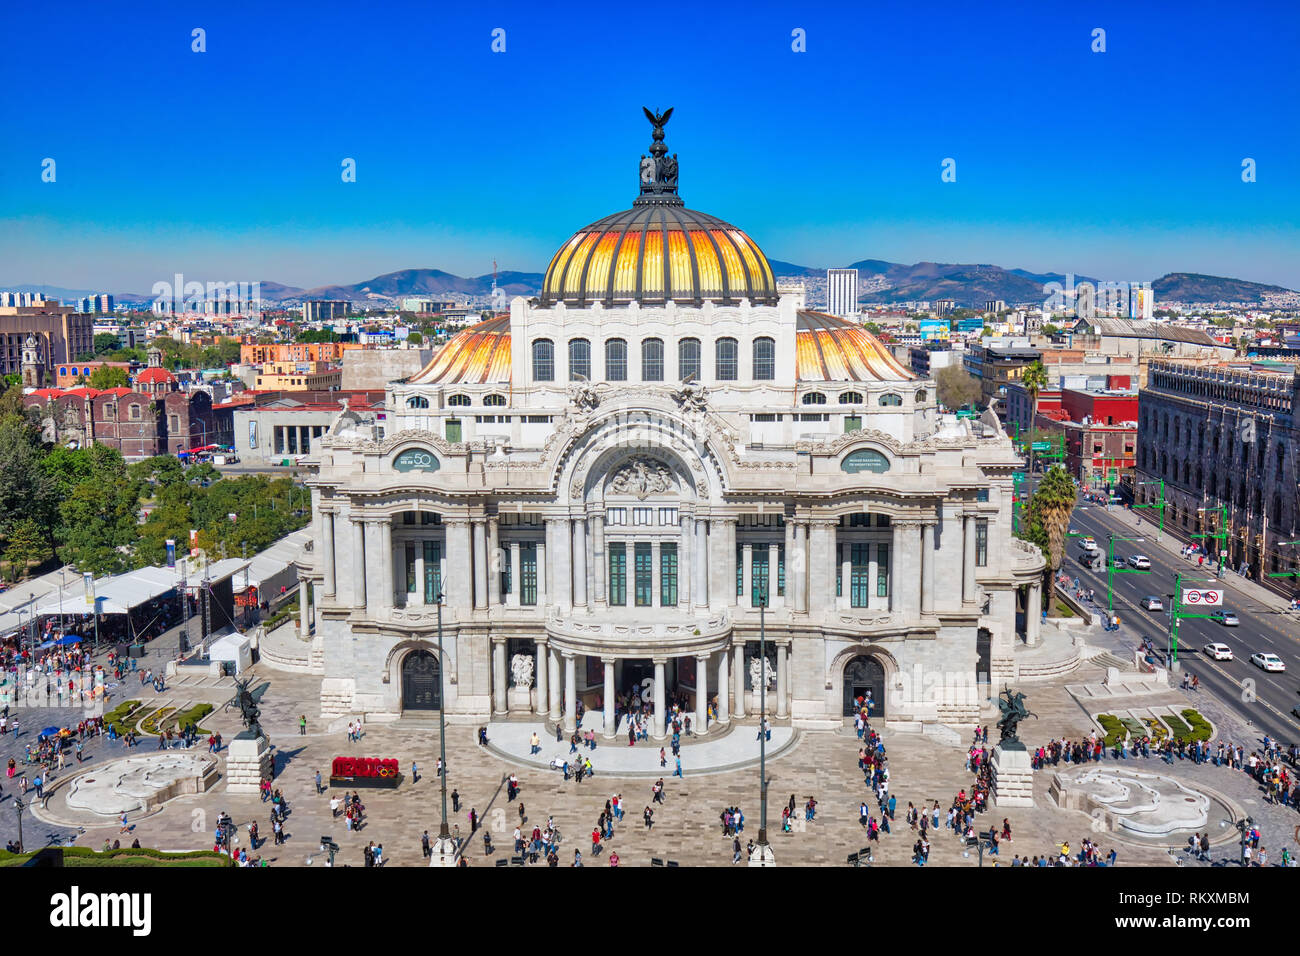 Mexiko City, Mexiko - 2 Dezember, 2018: Wahrzeichen Palast der Schönen Künste (Palacio de Bellas Artes) in Alameda Central Park in der Nähe von Mexico Stadt Zentrum Stockfoto